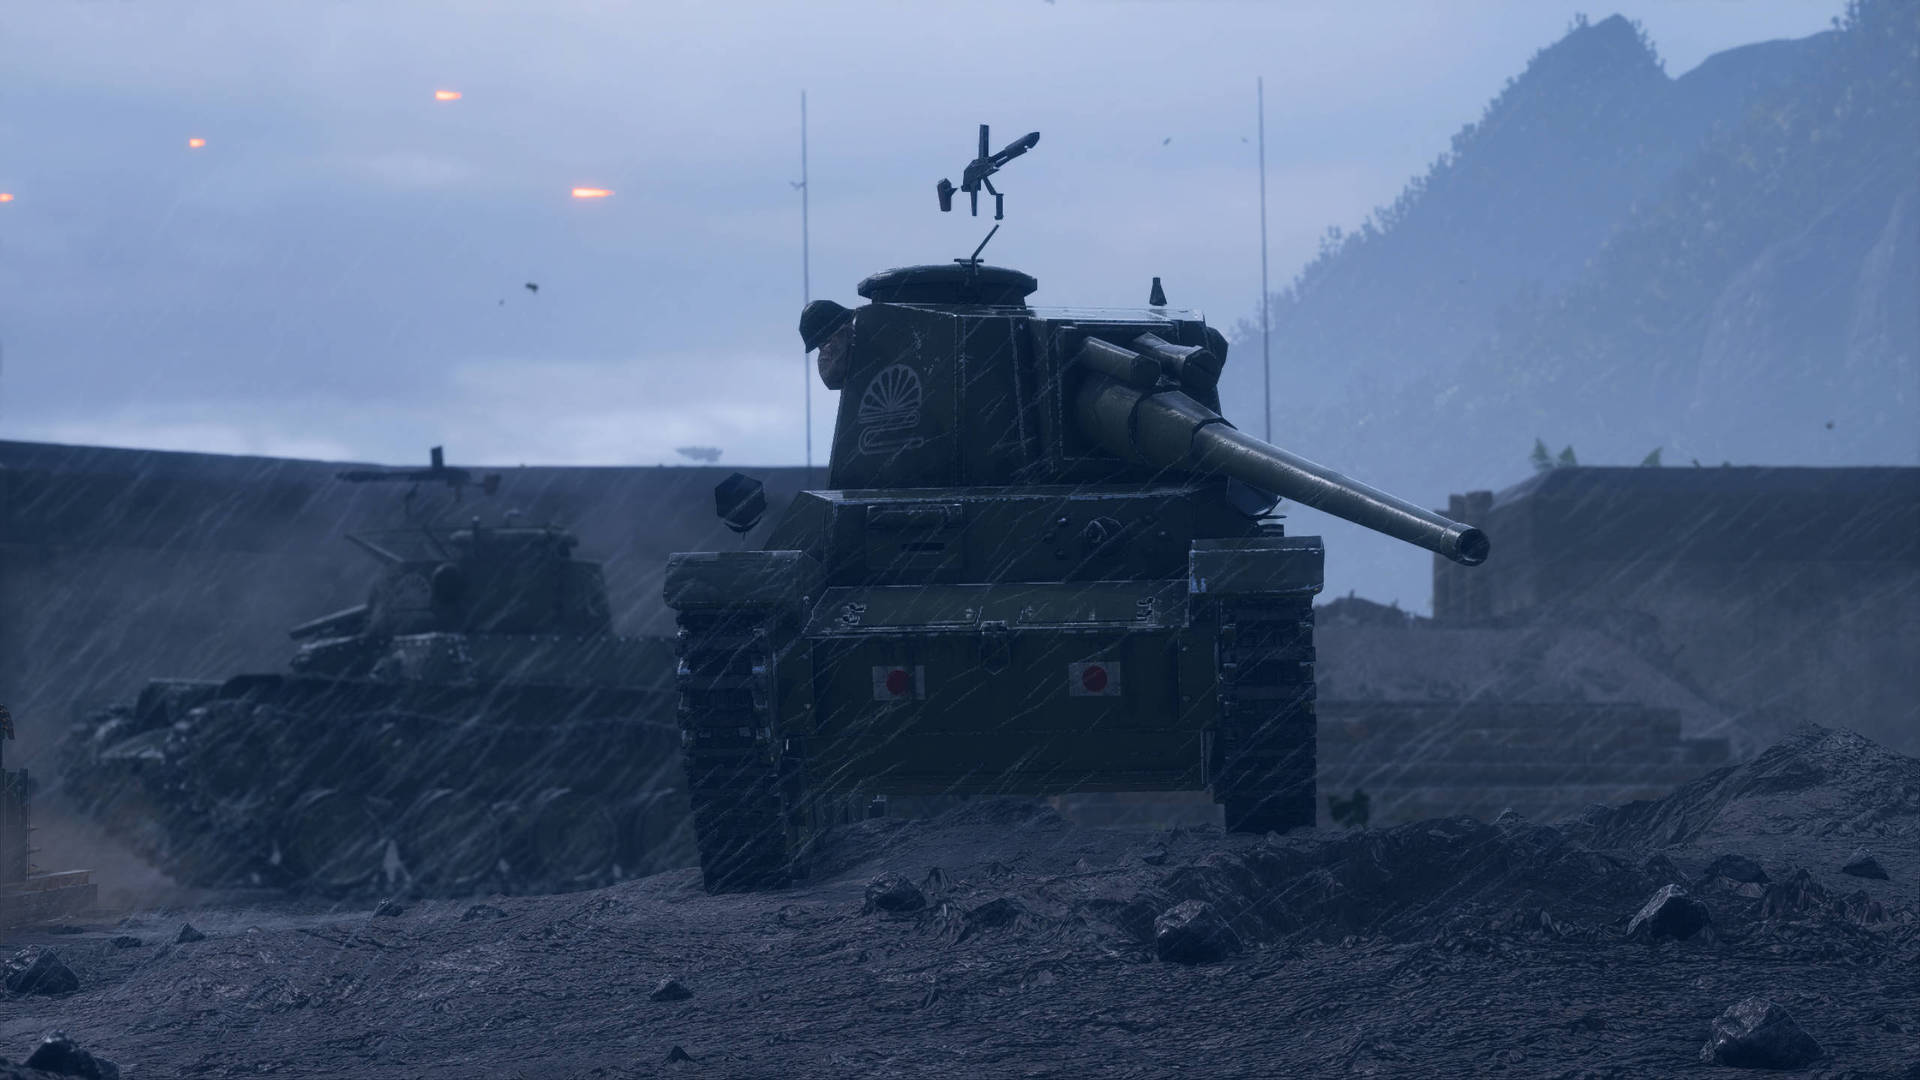 Battlefield 1 HD Image Of Tanks Wallpaper